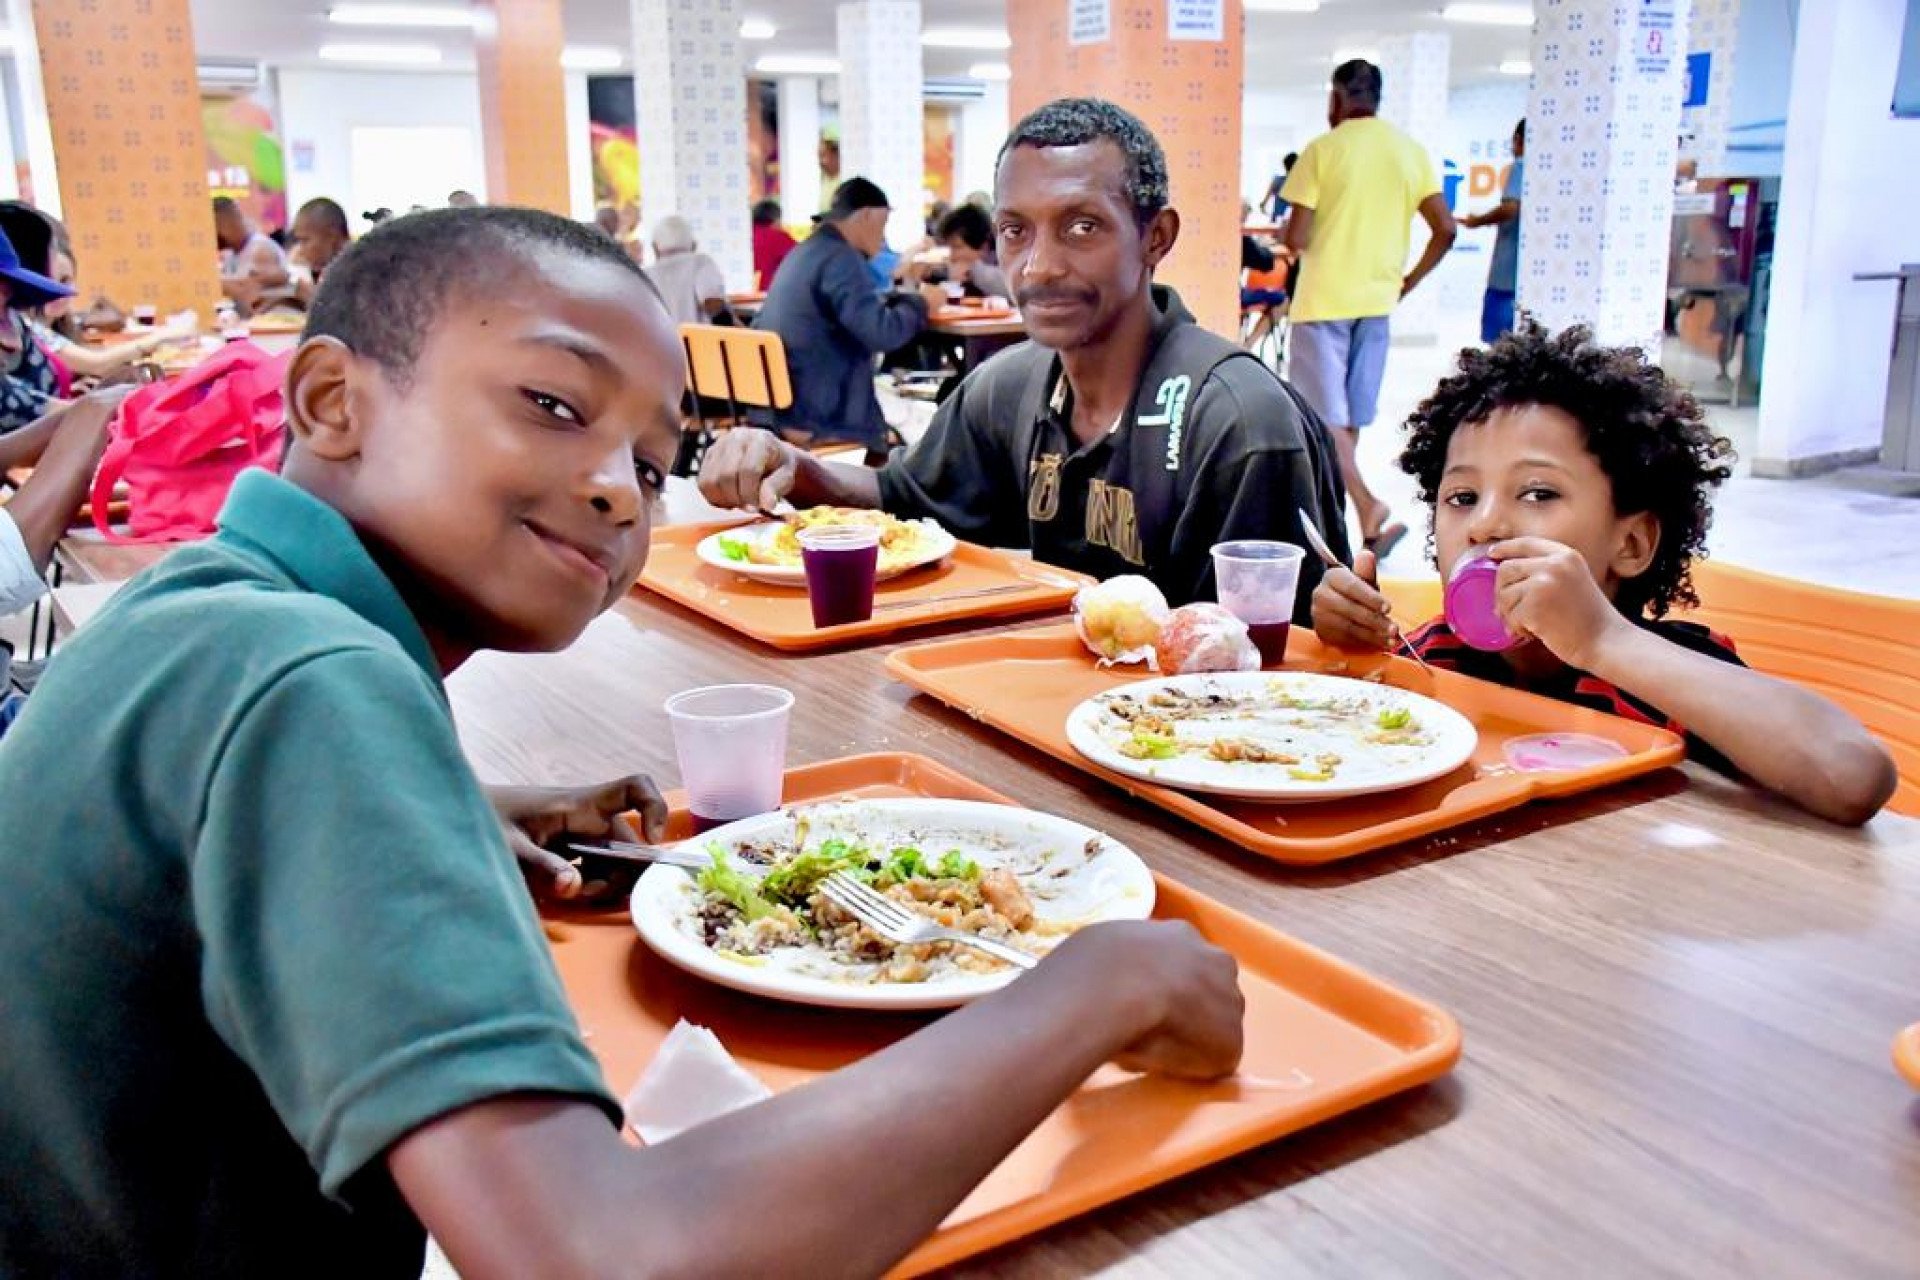 Em companhia dos filhos, o pedreiro Evandro dos Santos relatou que almoçar no Restaurante do Povo foi a melhor opção - Jeovani Campos / PMBR